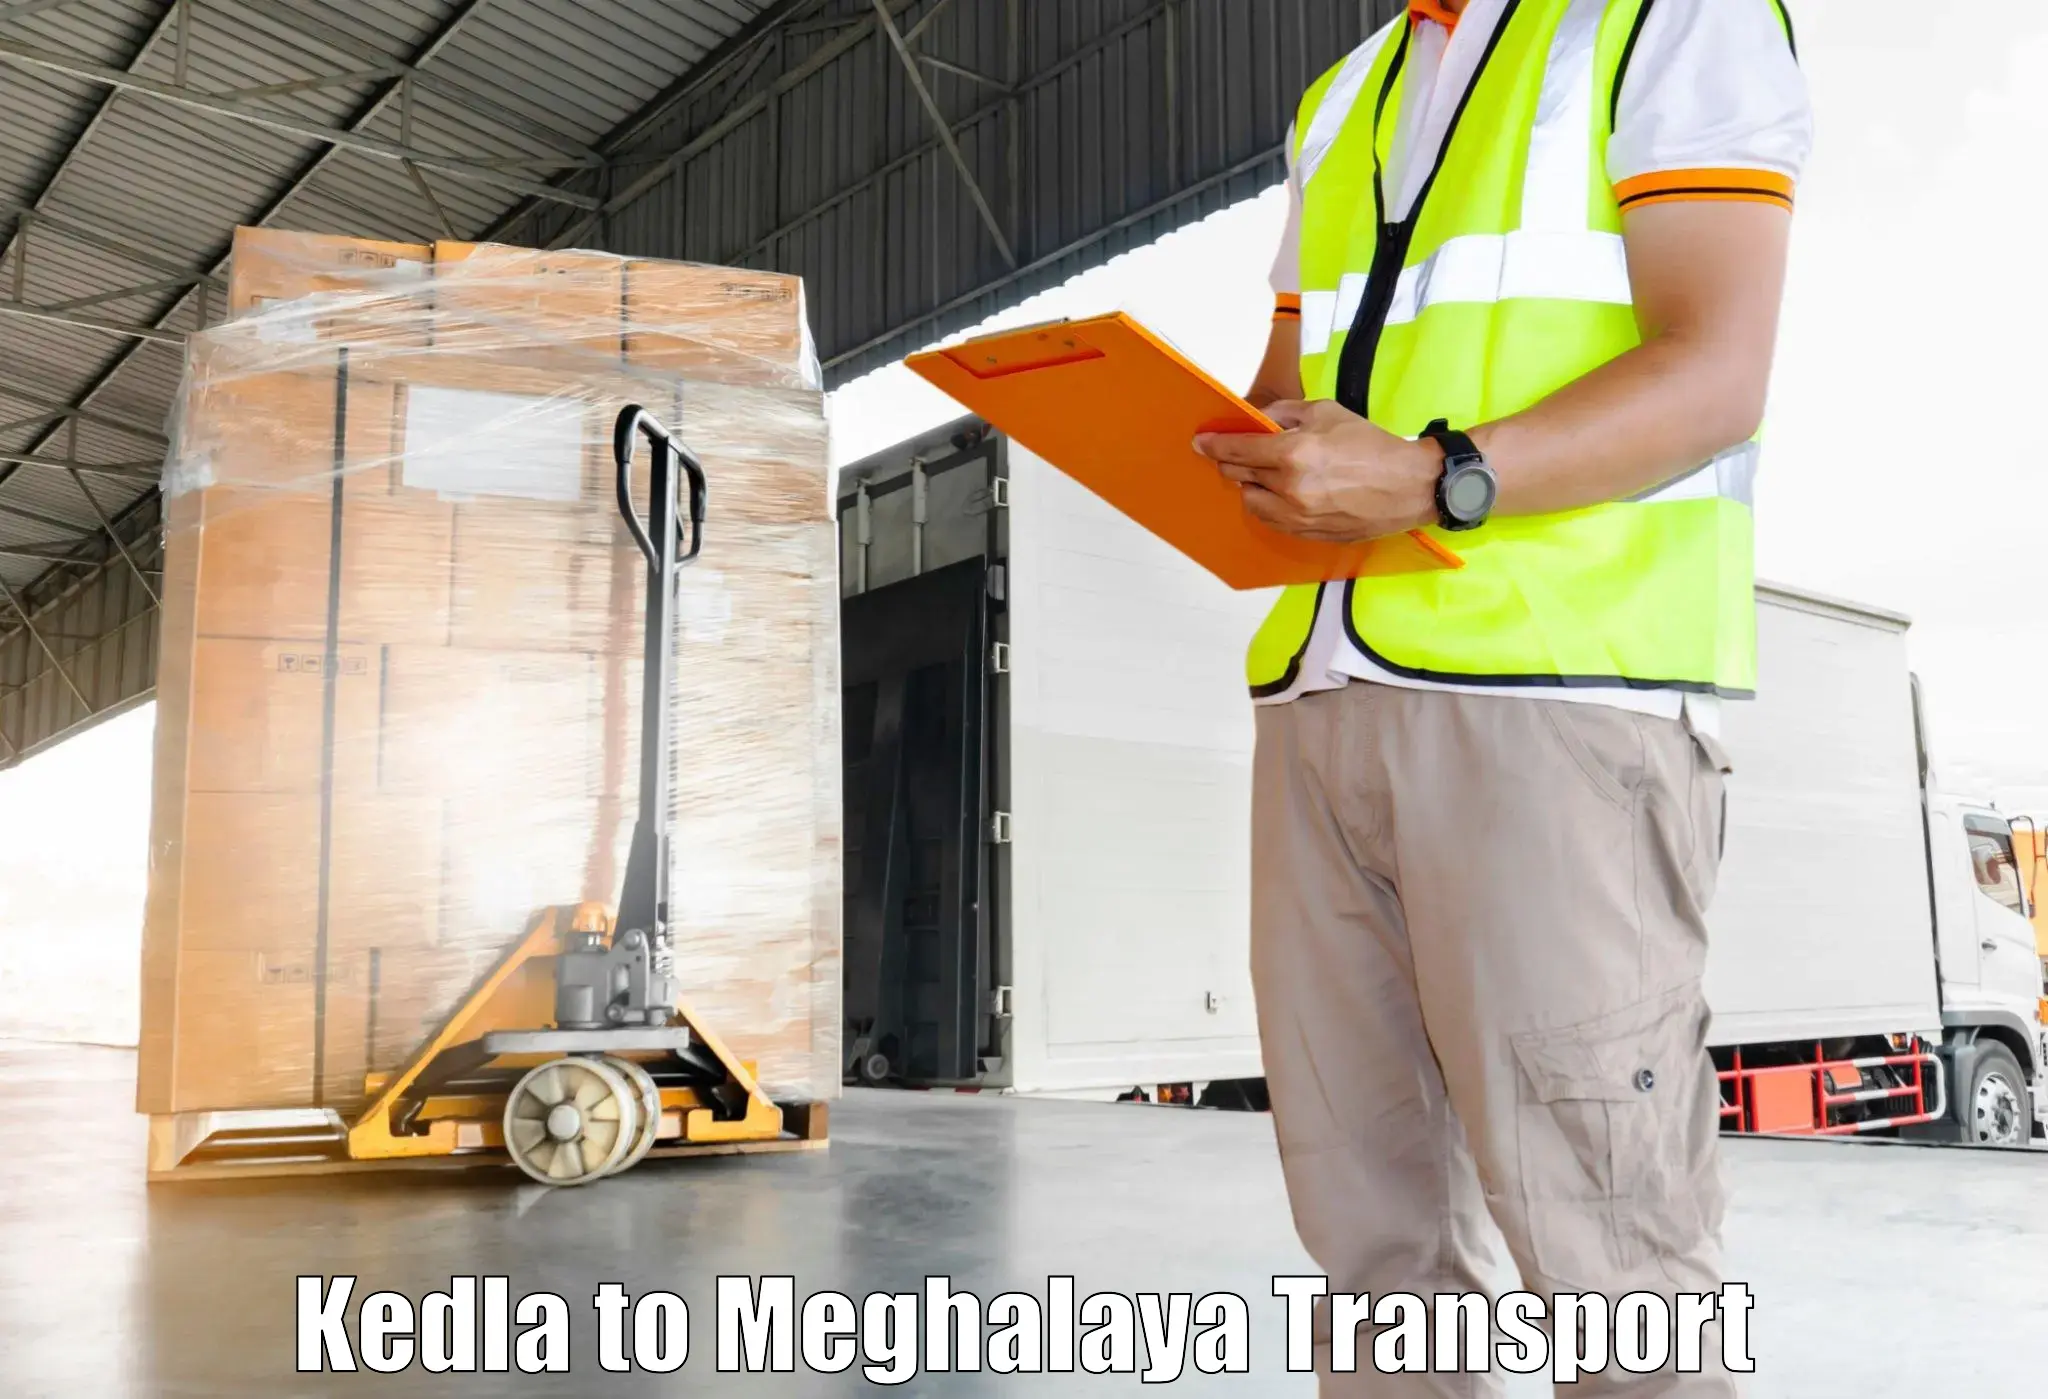 Land transport services Kedla to Umsaw